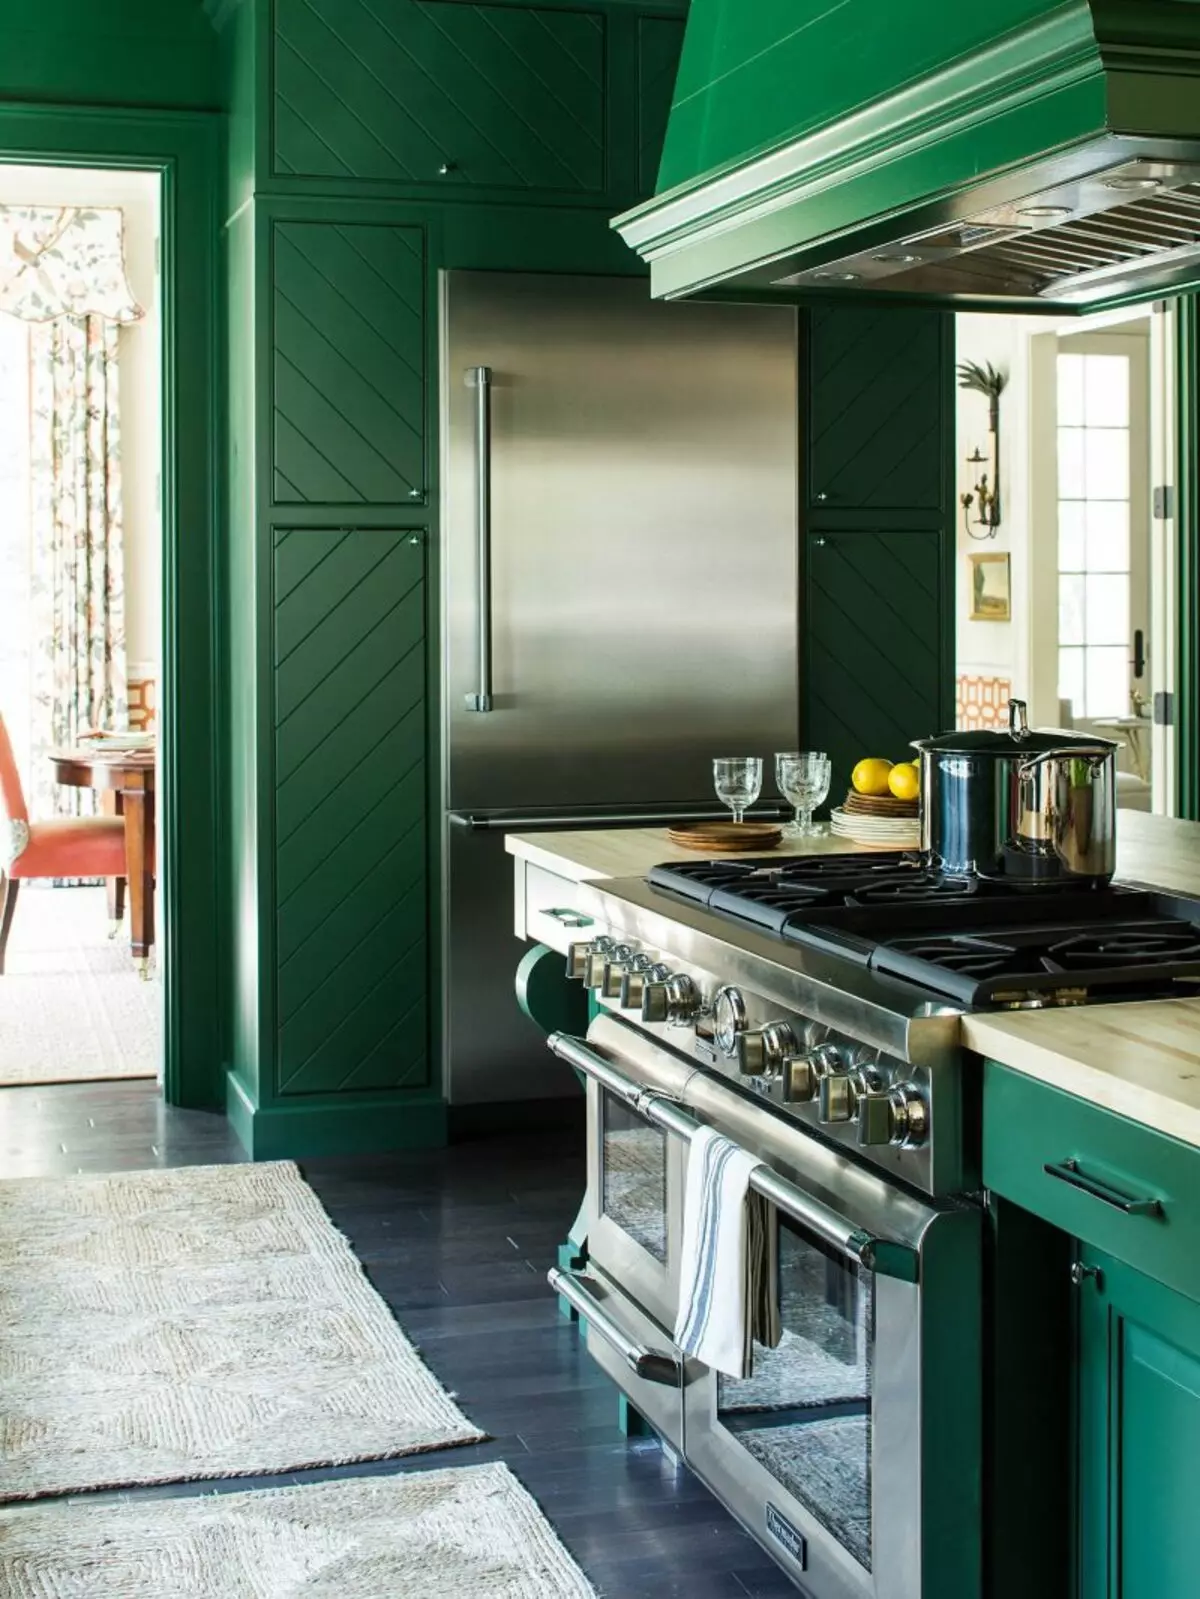 Cuina verda (111 fotos): auriculars de cuina verda en disseny d'interiors, selecció de fons de pantalla verd, verd, verd i verd fosc, cuina marró negra i verda 9554_47